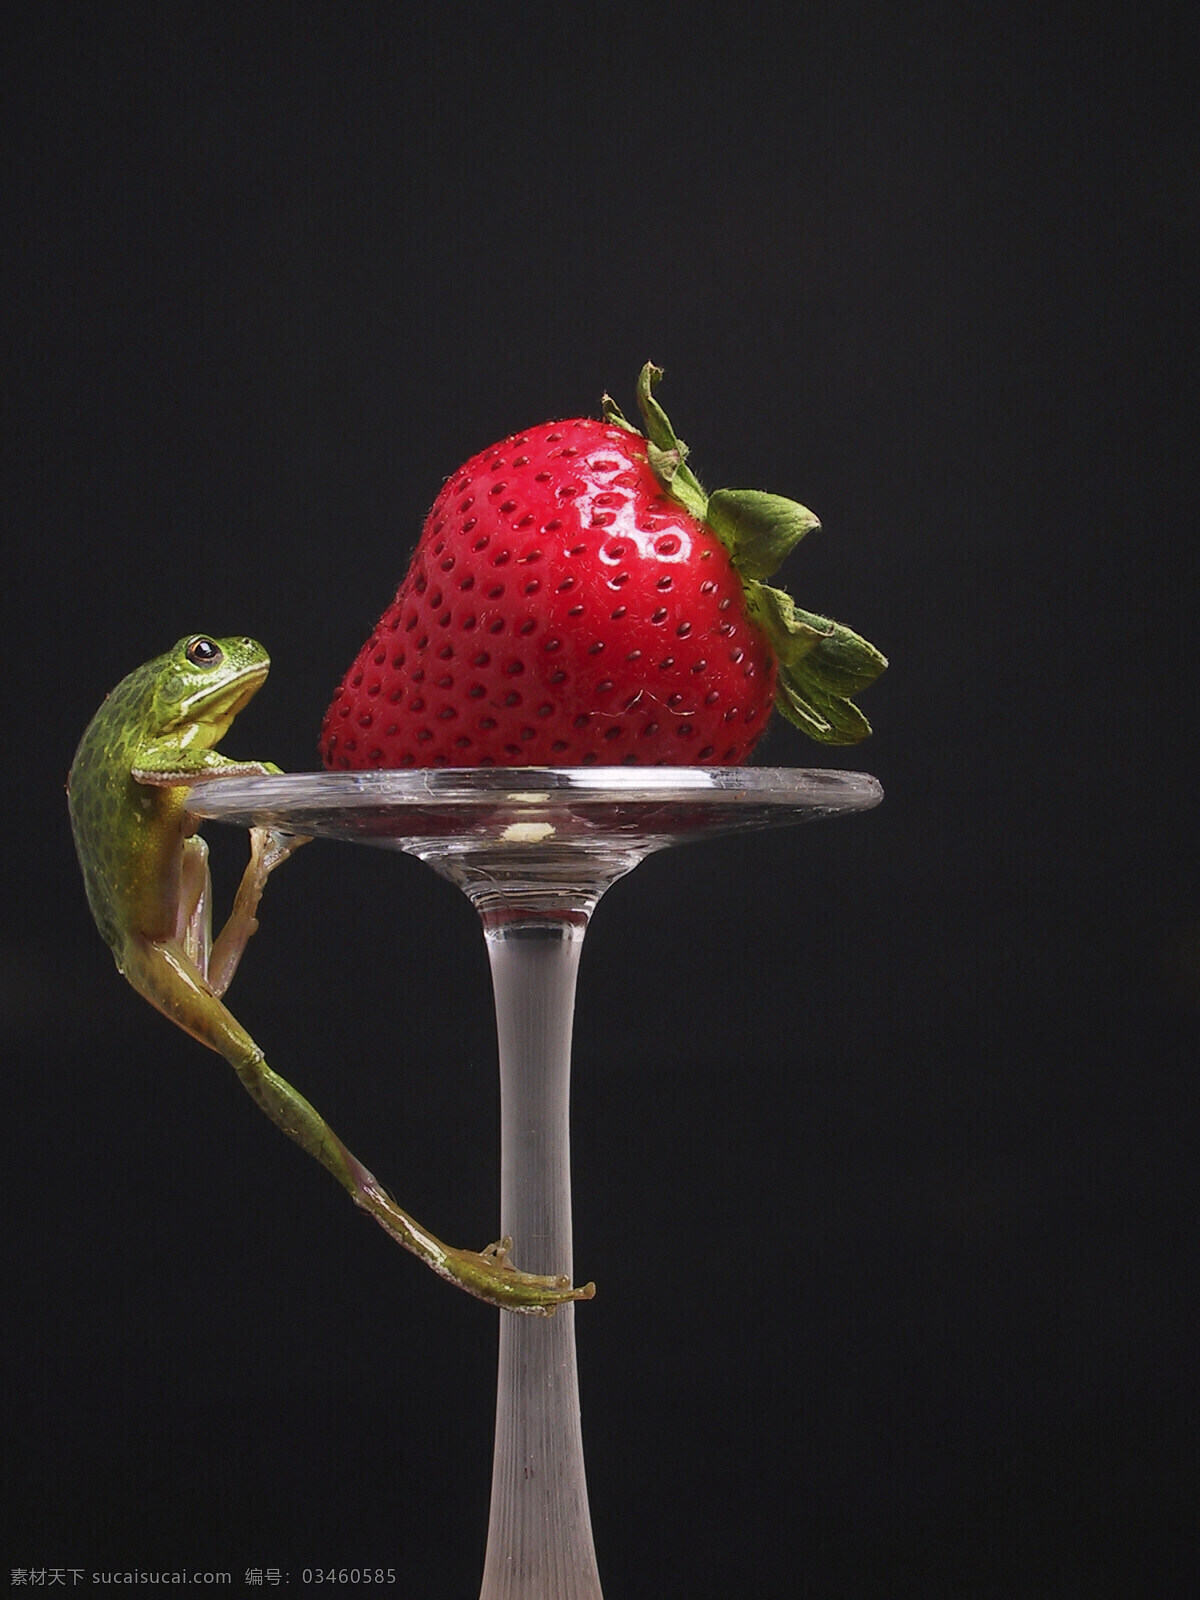 正在 攀爬 小 青蛙 动物 两栖动物 酒樽 水果 草莓 可口 食欲 陆地动物 生物世界